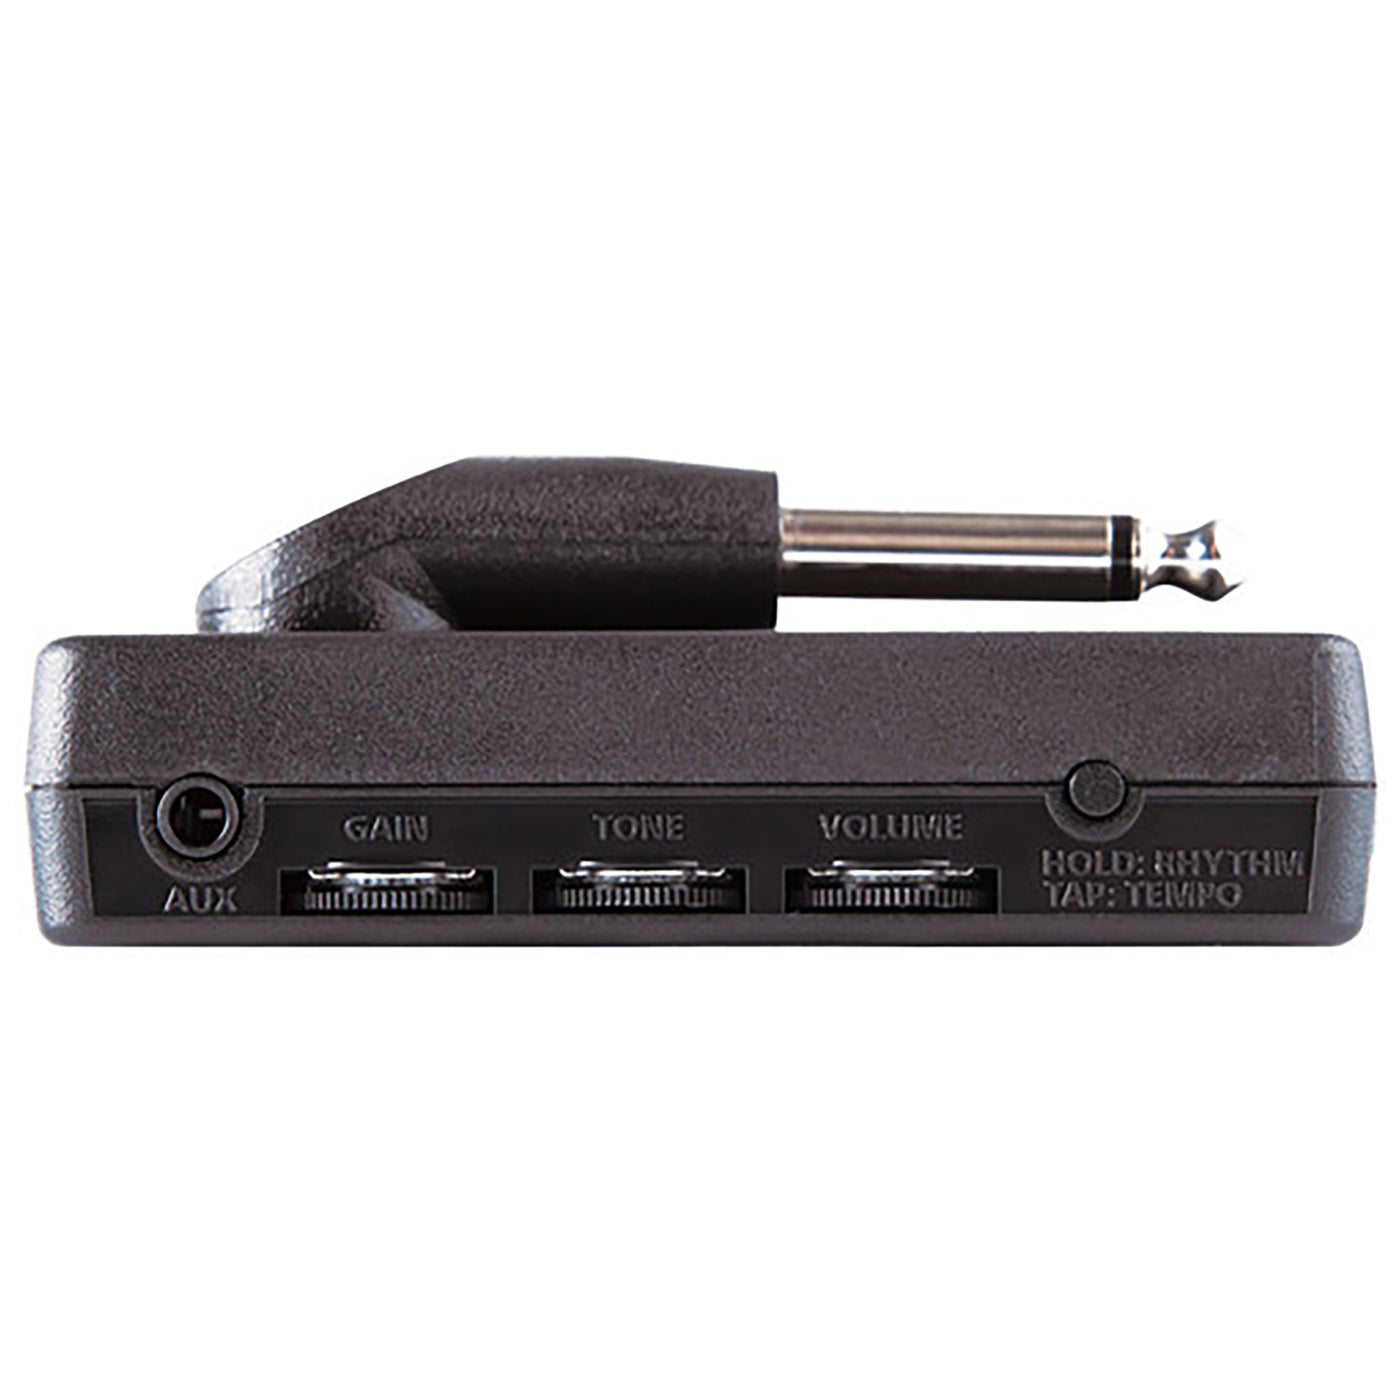 Blackstar amPlug 2 FLY - Headphone Bass Amplifier